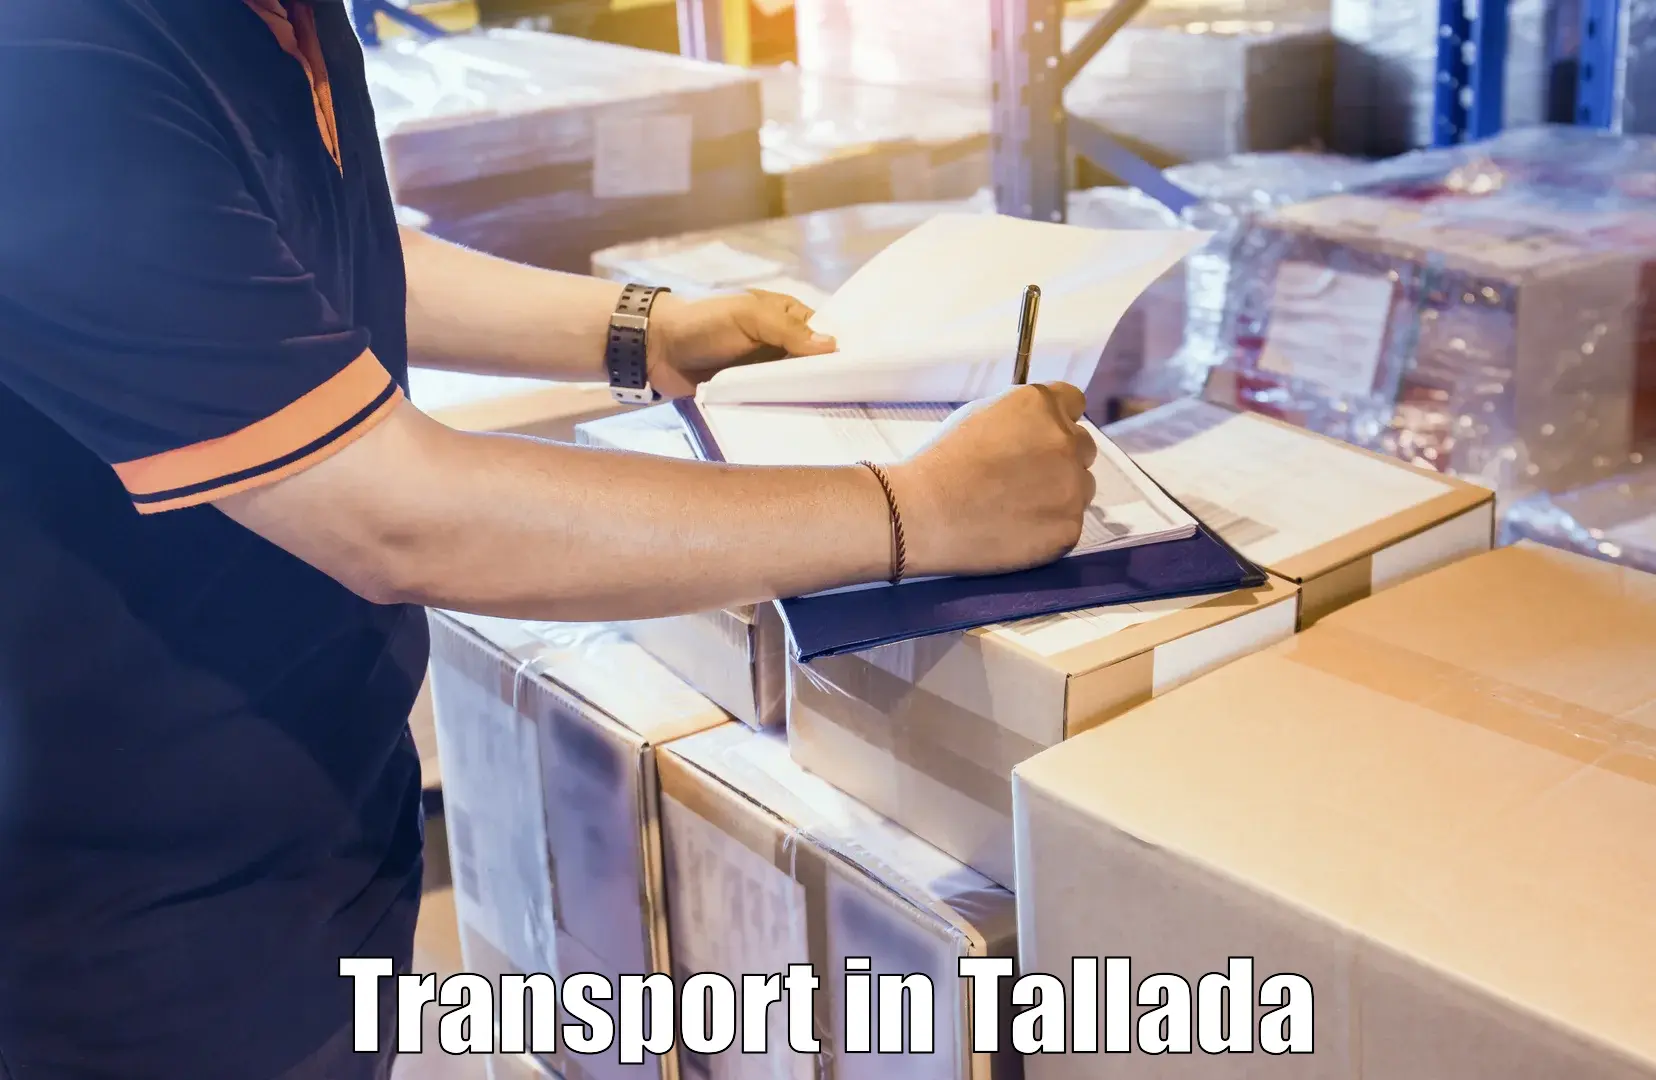 Delivery service in Tallada